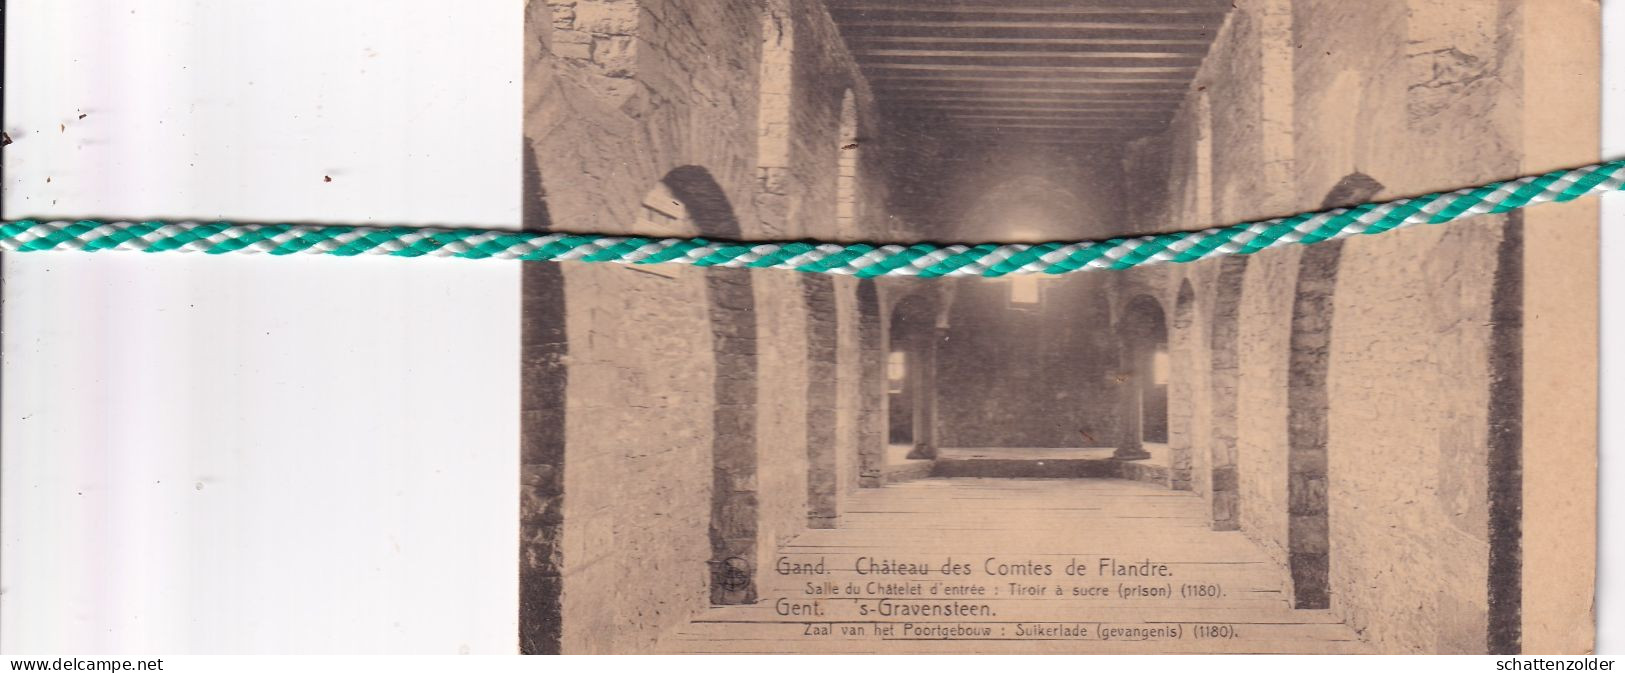 Gent, Gand, Château Des Comtes De Flandre, Salle Du Châtelet D'entrée, Tiroir A Sucre (prison) - Gent